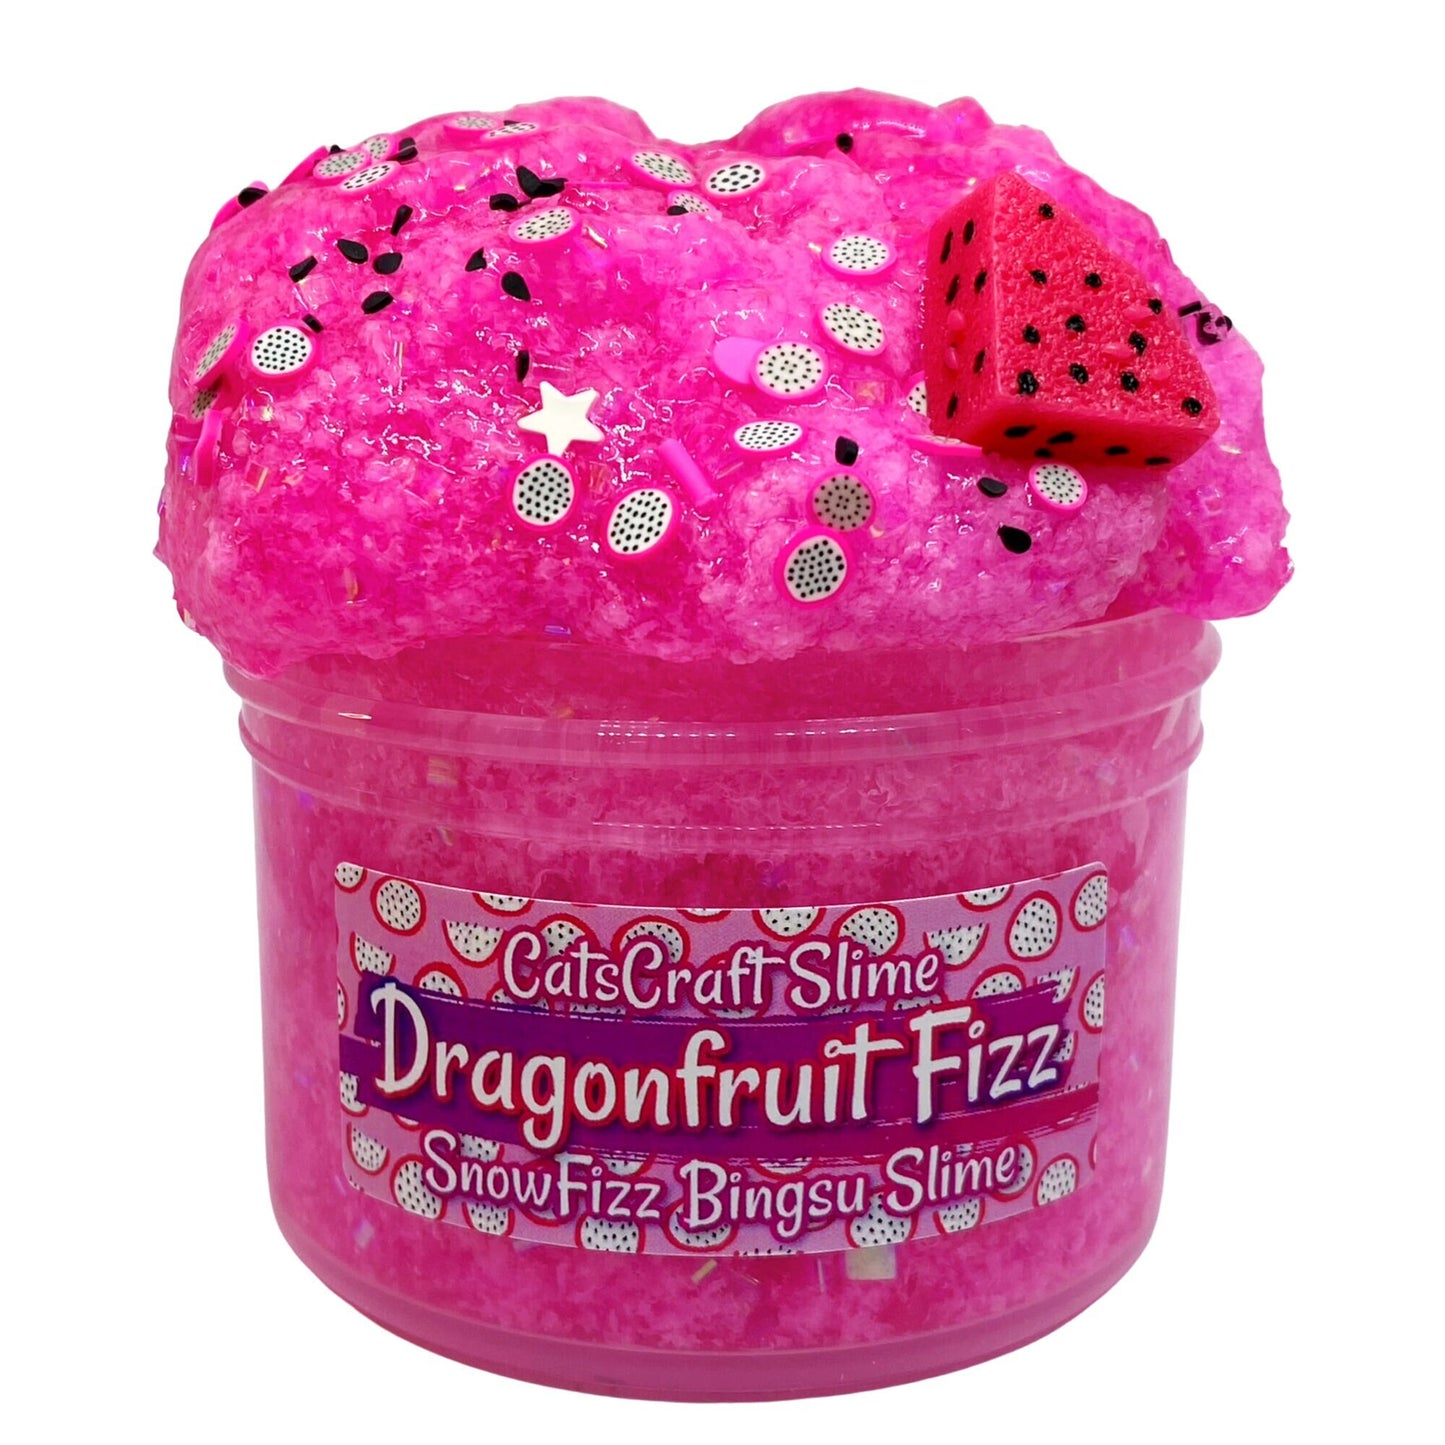 Snow Fizz Bingsu "Dragonfruit Fizz" Scented crunchy Slime ASMR with Charm